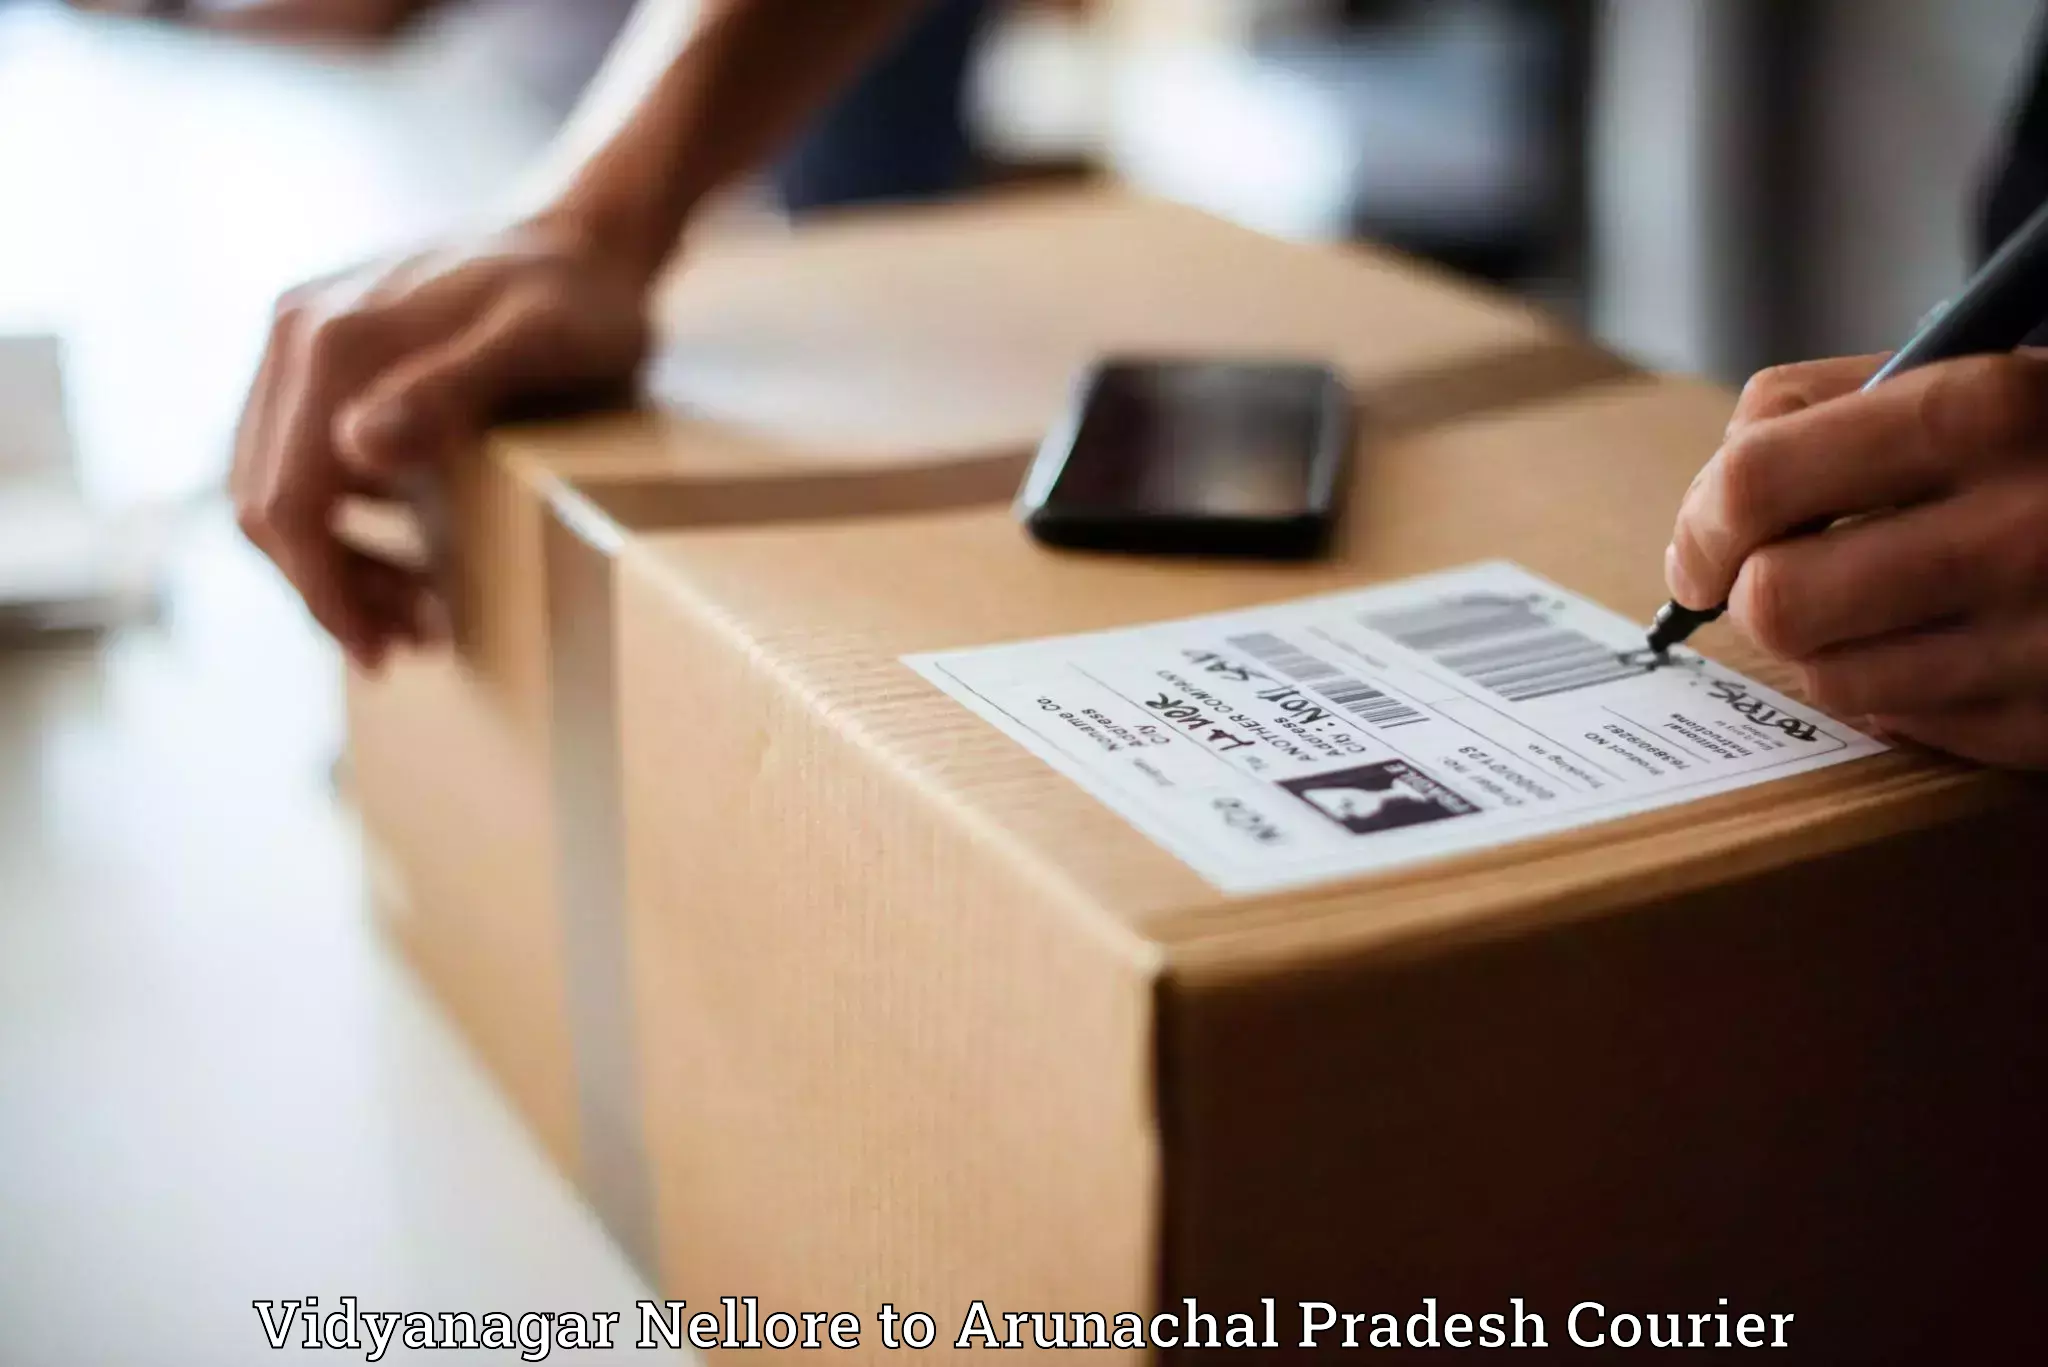 Customer-oriented courier services Vidyanagar Nellore to Arunachal Pradesh